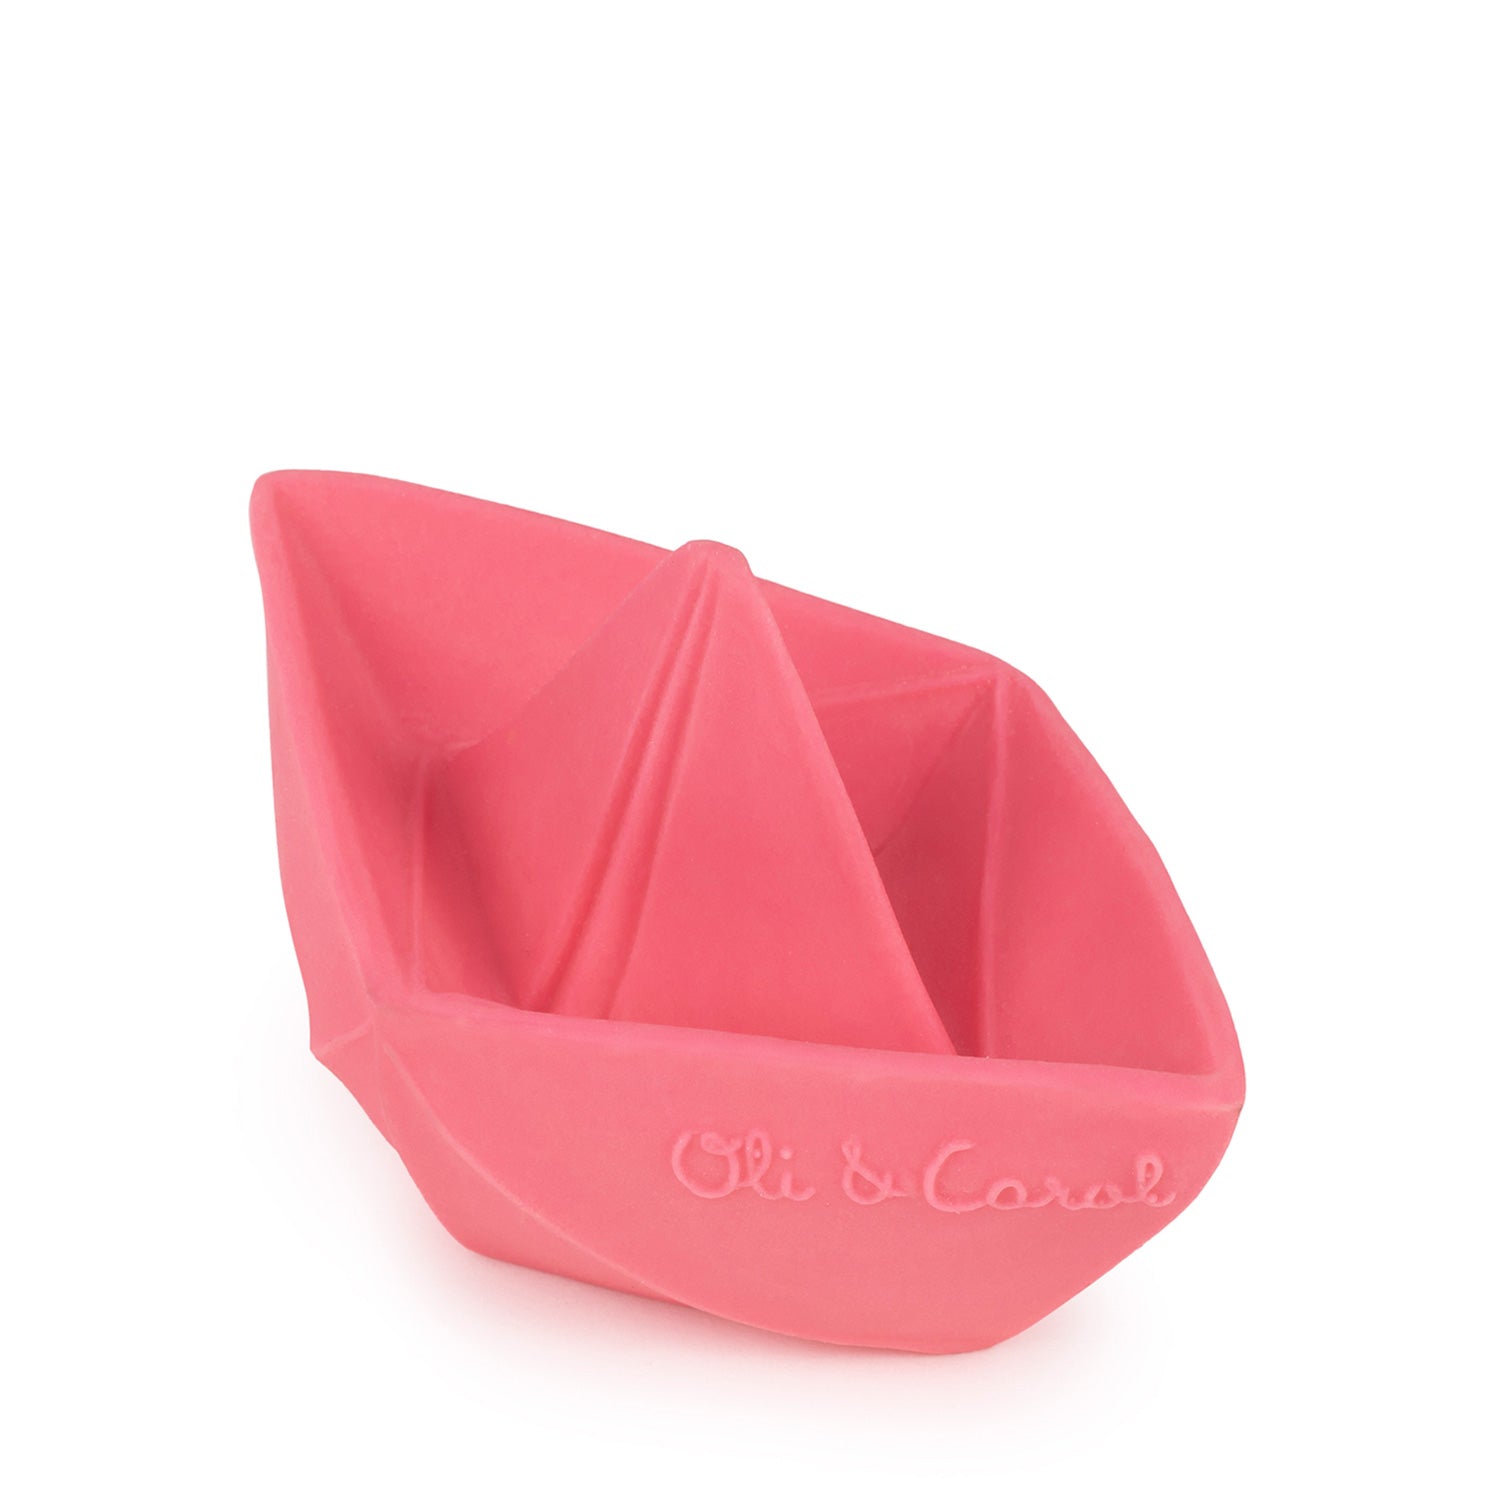 Origami Boat Pink Bath Toy - Oli&Carol